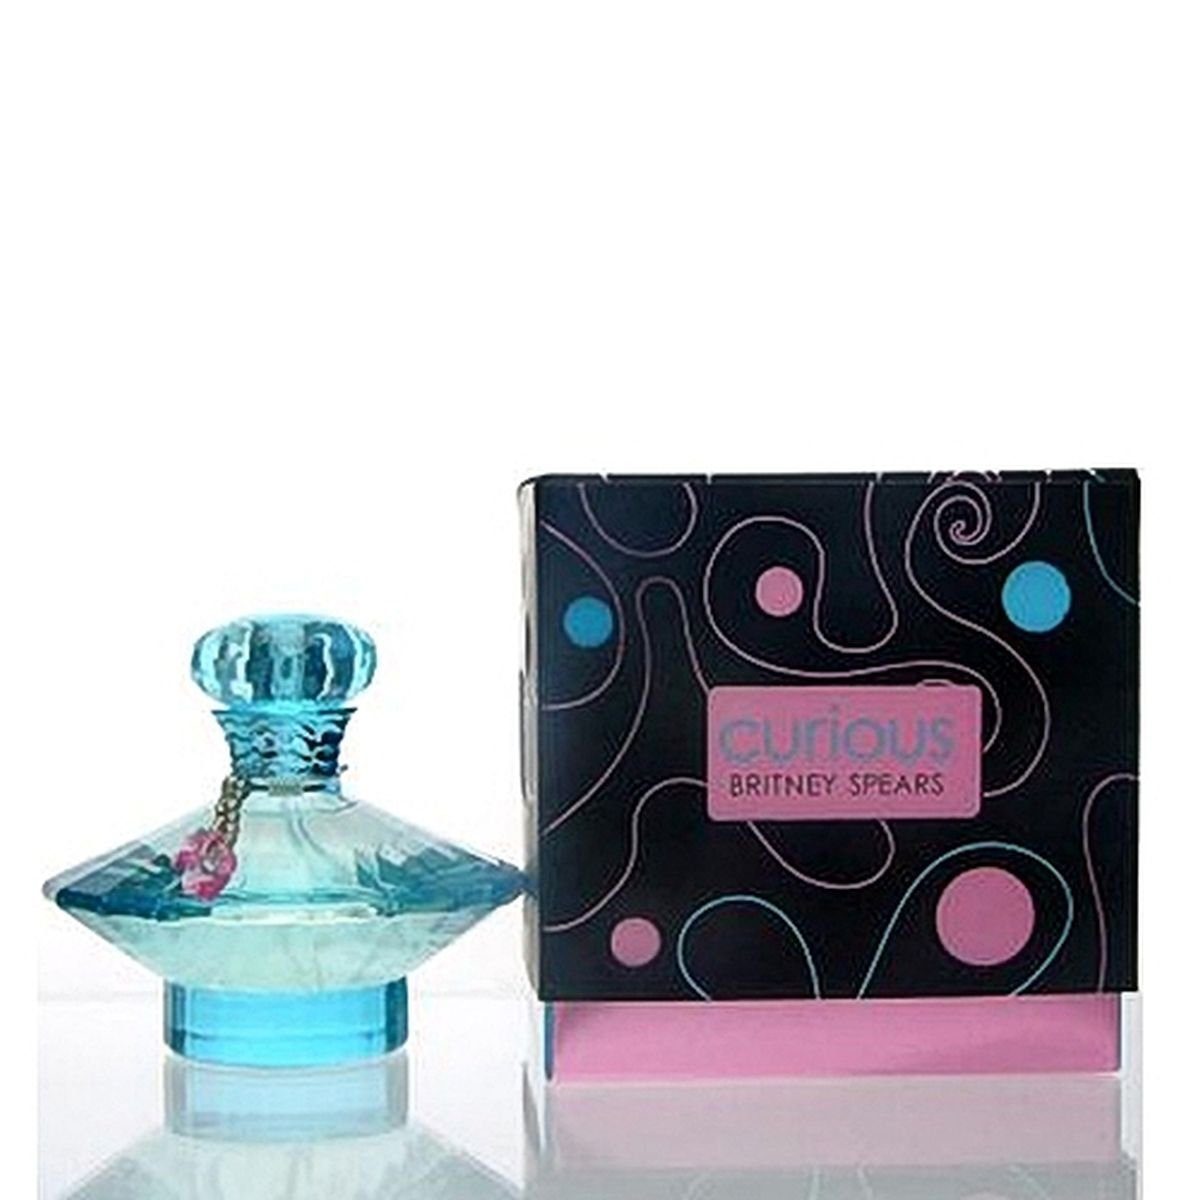 Beliebte Marke Britney Spears Eau Spears Parfum ml Britney 100 Curious Parfum de Eau de